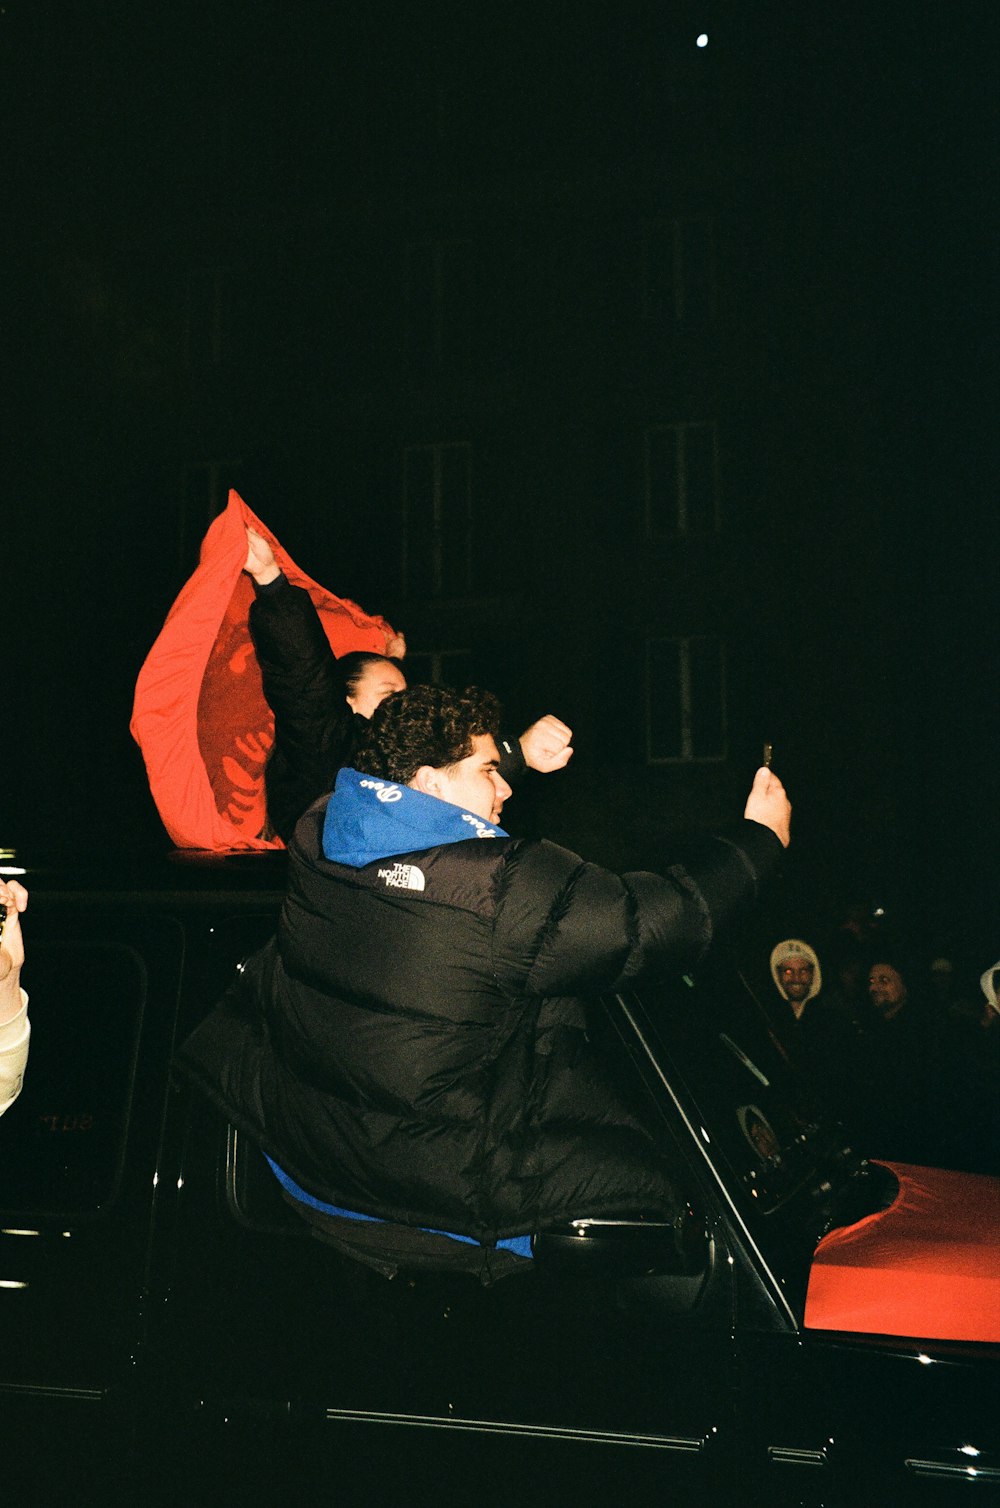 a man in a car waving a red flag